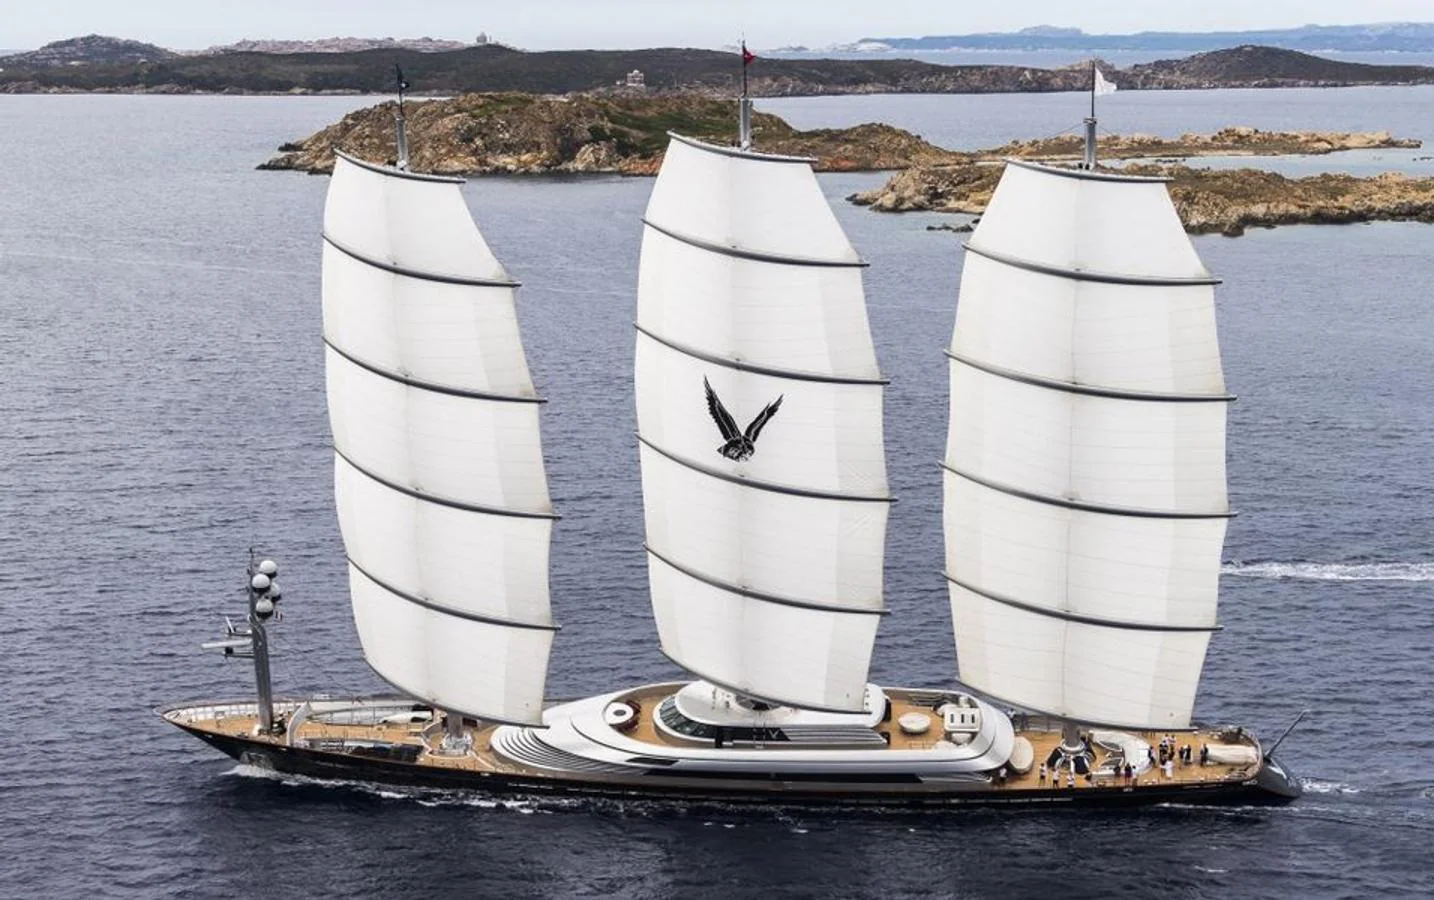 Maltese Falcon. Es un velero construido por el astillero italiano Perini Navi.